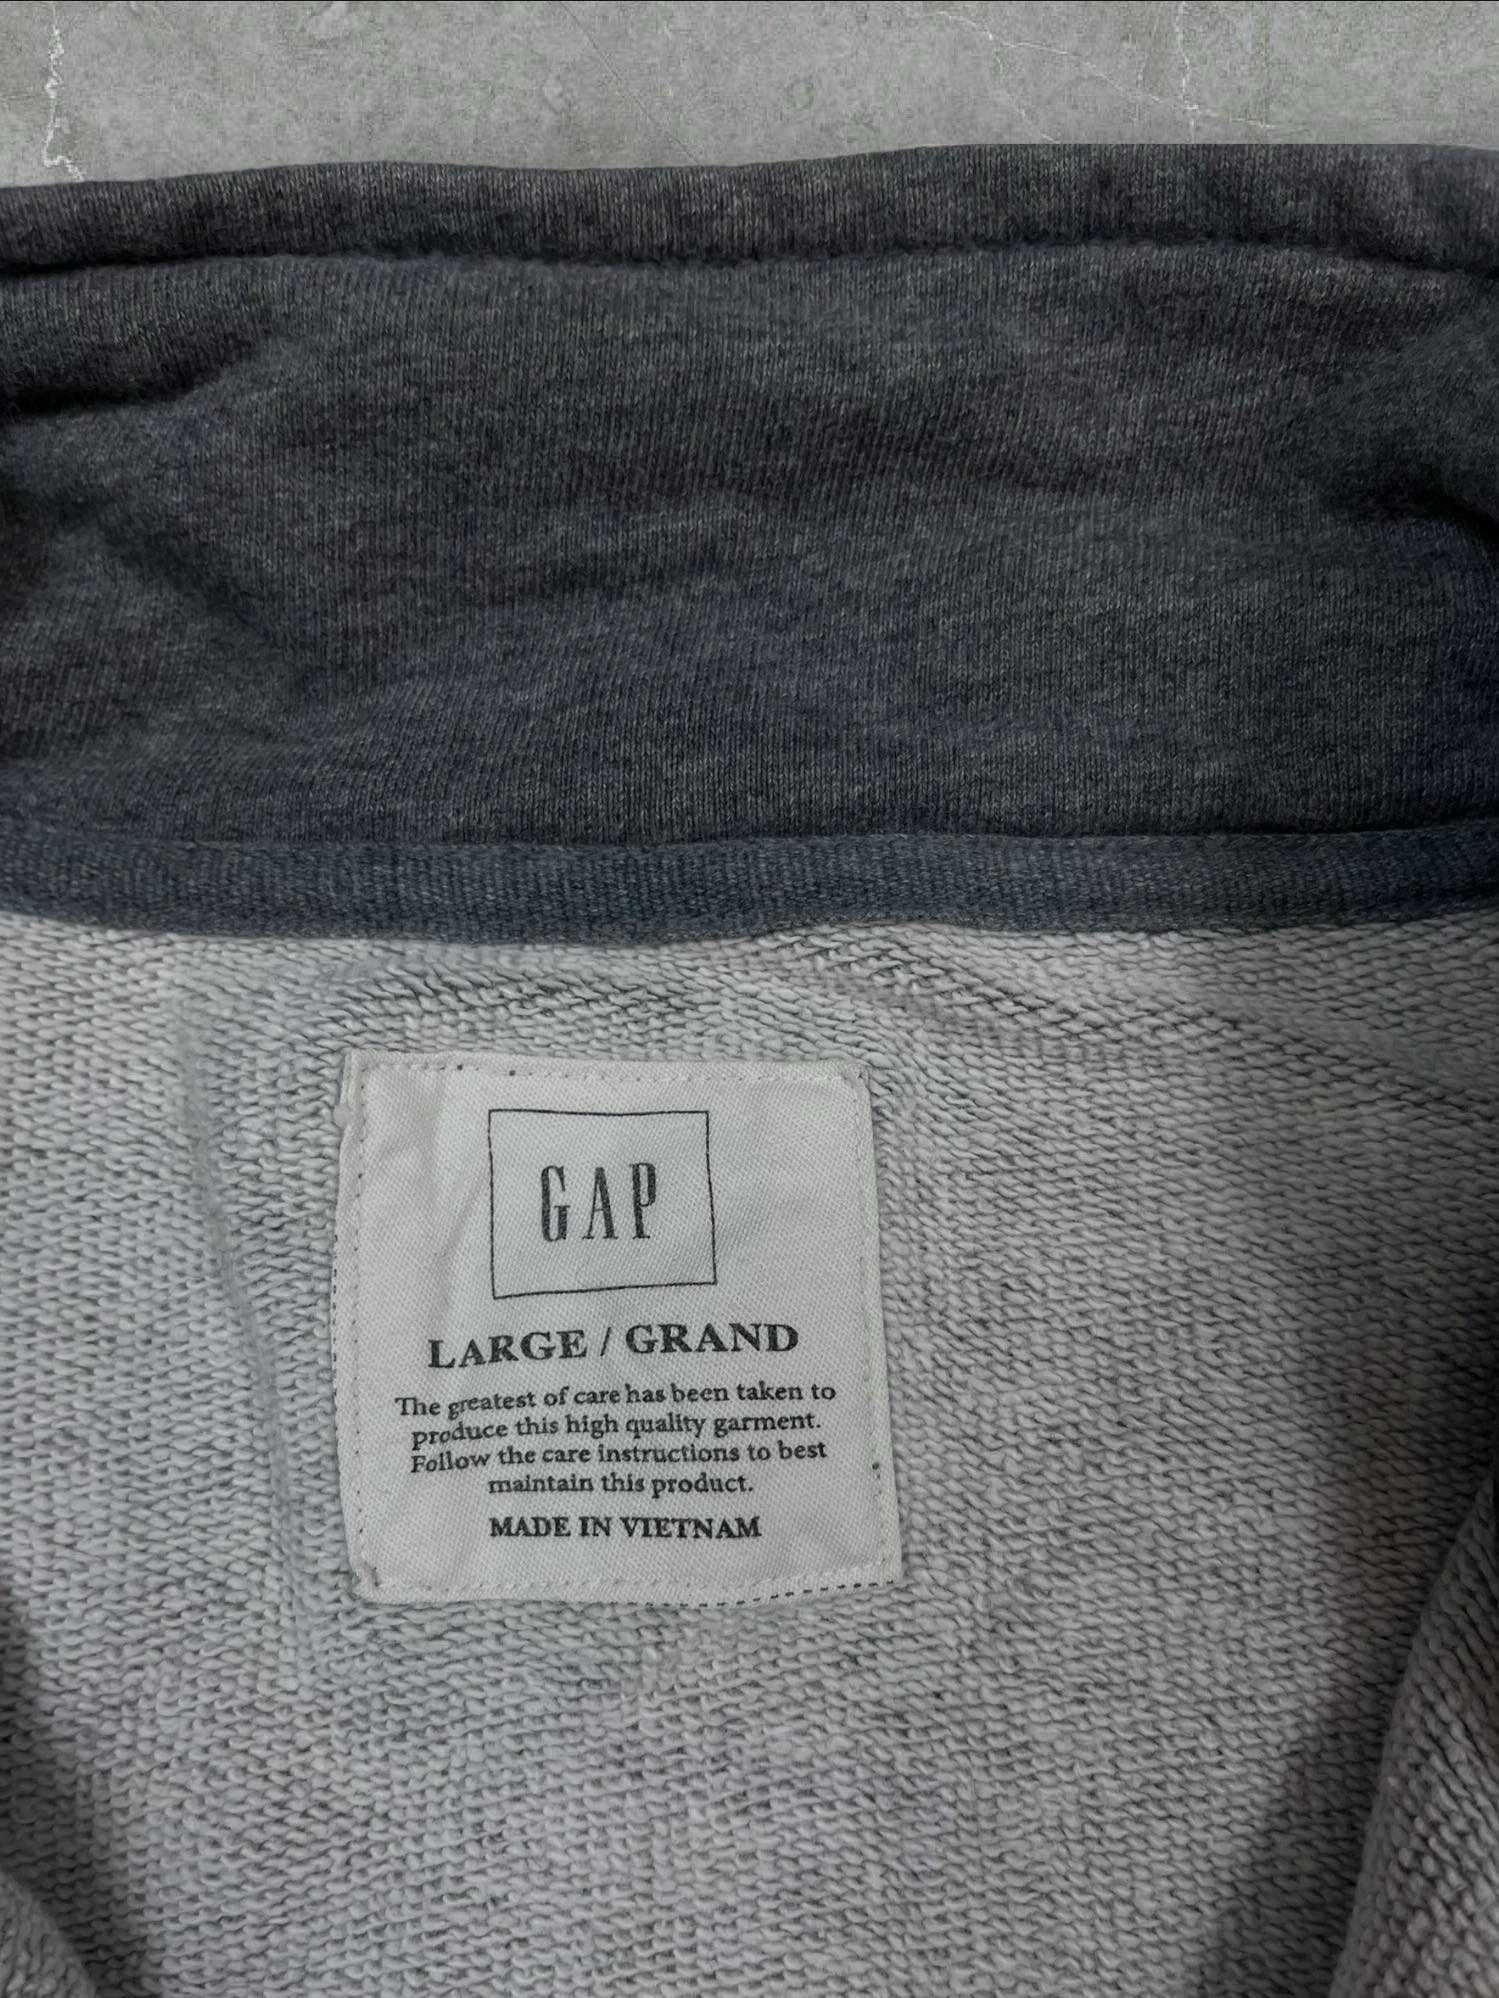 Bluza Gap Męska rozpinana szara bawełniana Vintage retro logo